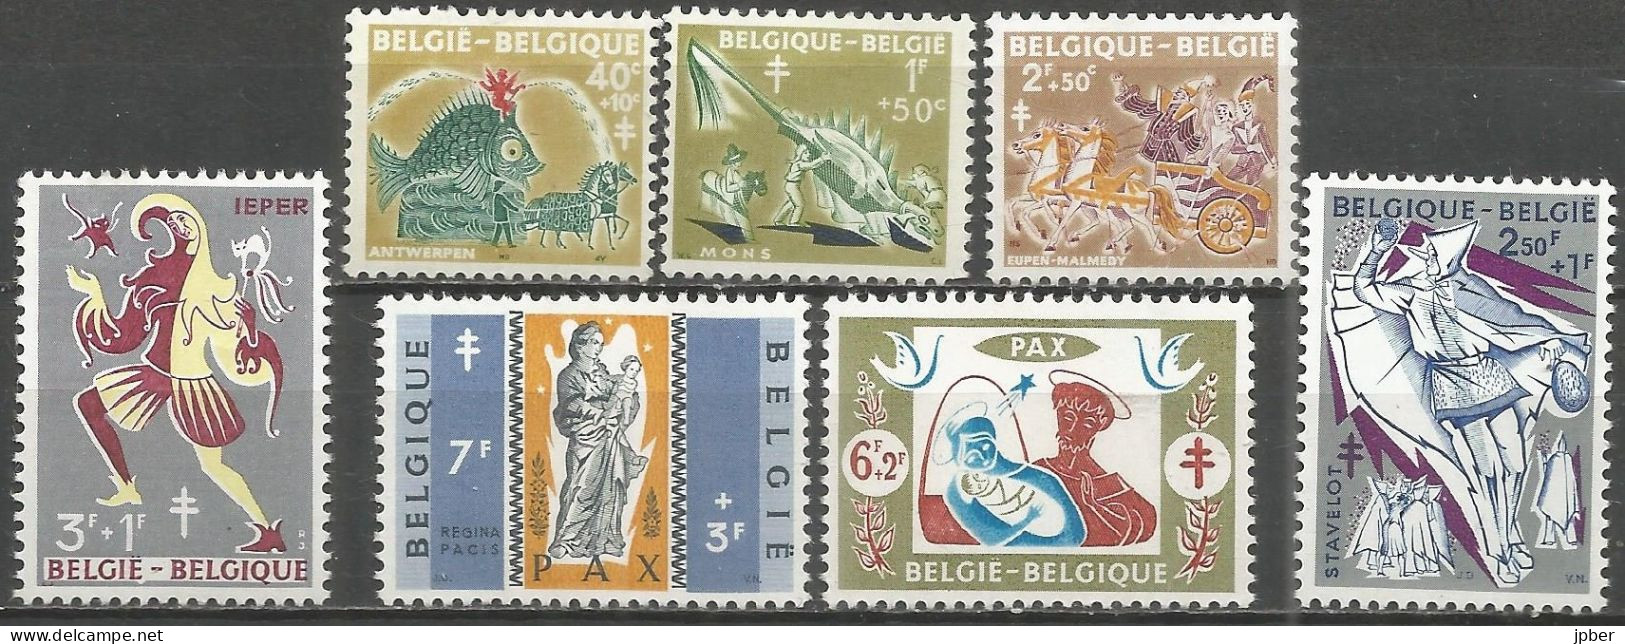 Belgique - Folklore - Anvers, Mons, Eupen, Stavelot, Ypres - N°1114 à 1120 */** - Unused Stamps